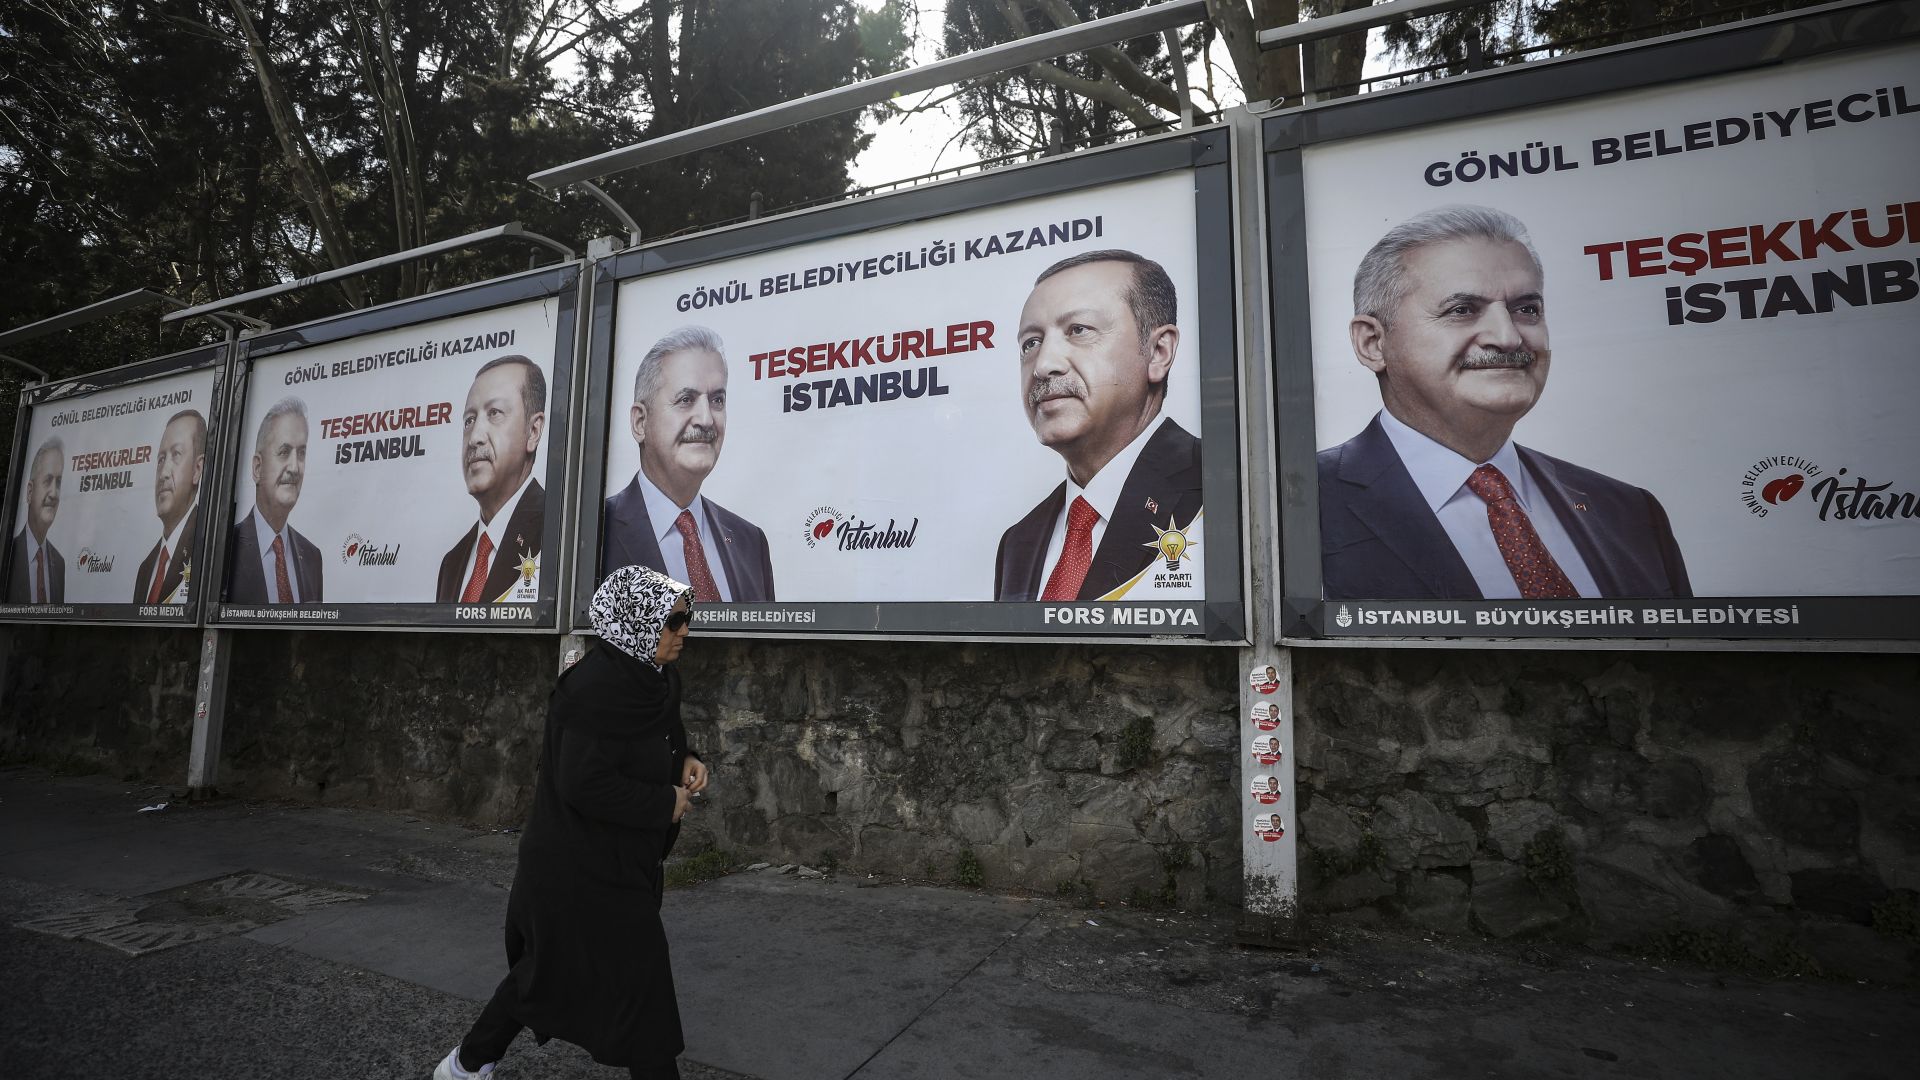 Партията на Ердоган оспорва резултите от изборите в Истанбул